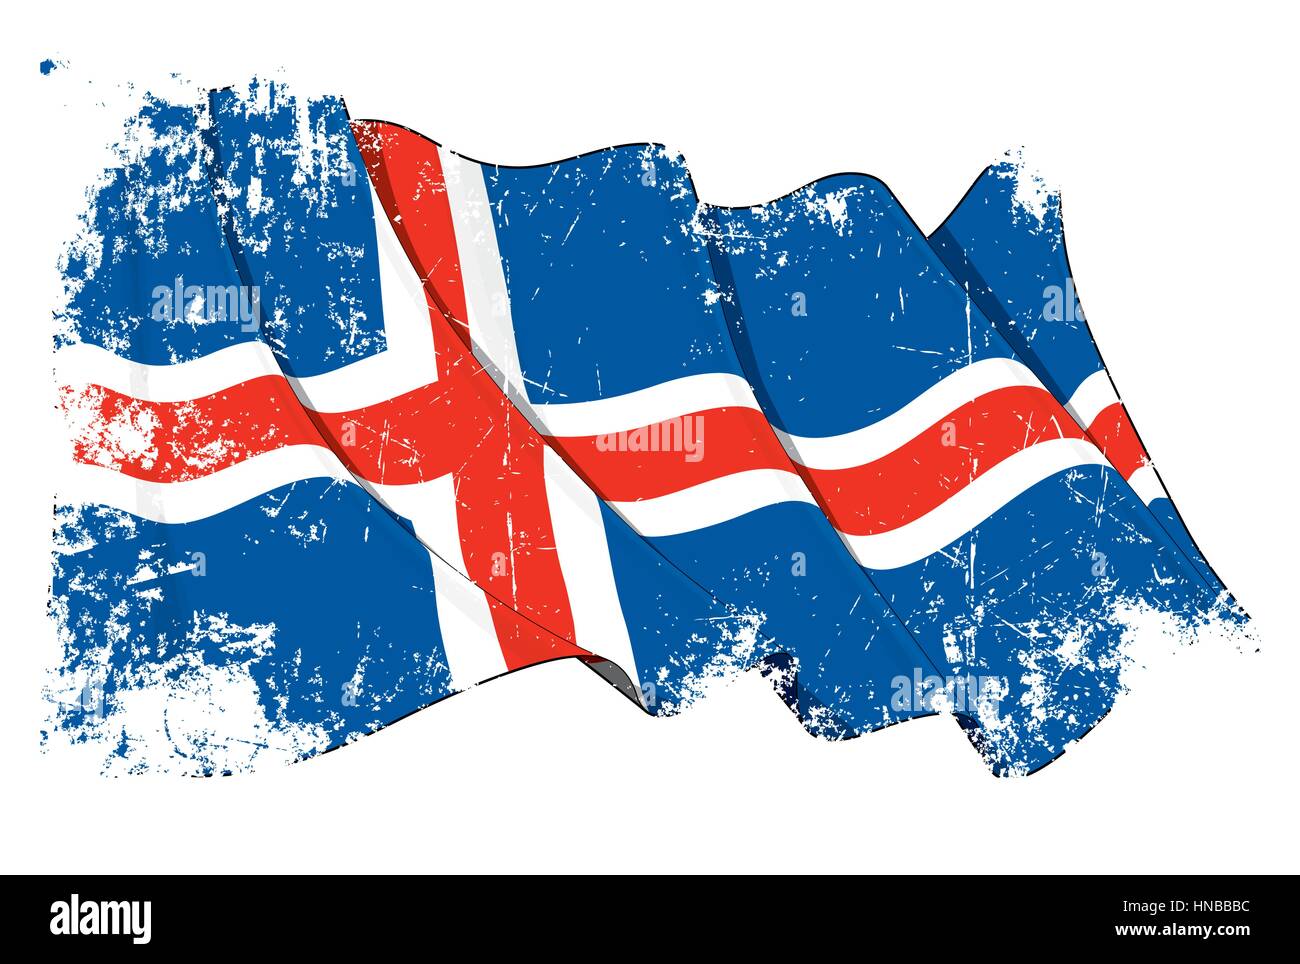 Grunge Vector Illustration d'une forme drapeau islandais. Tous les éléments en ordre. La texture, des lignes, des ombres et du drapeau Couleurs sur des calques séparés pour les SD Illustration de Vecteur